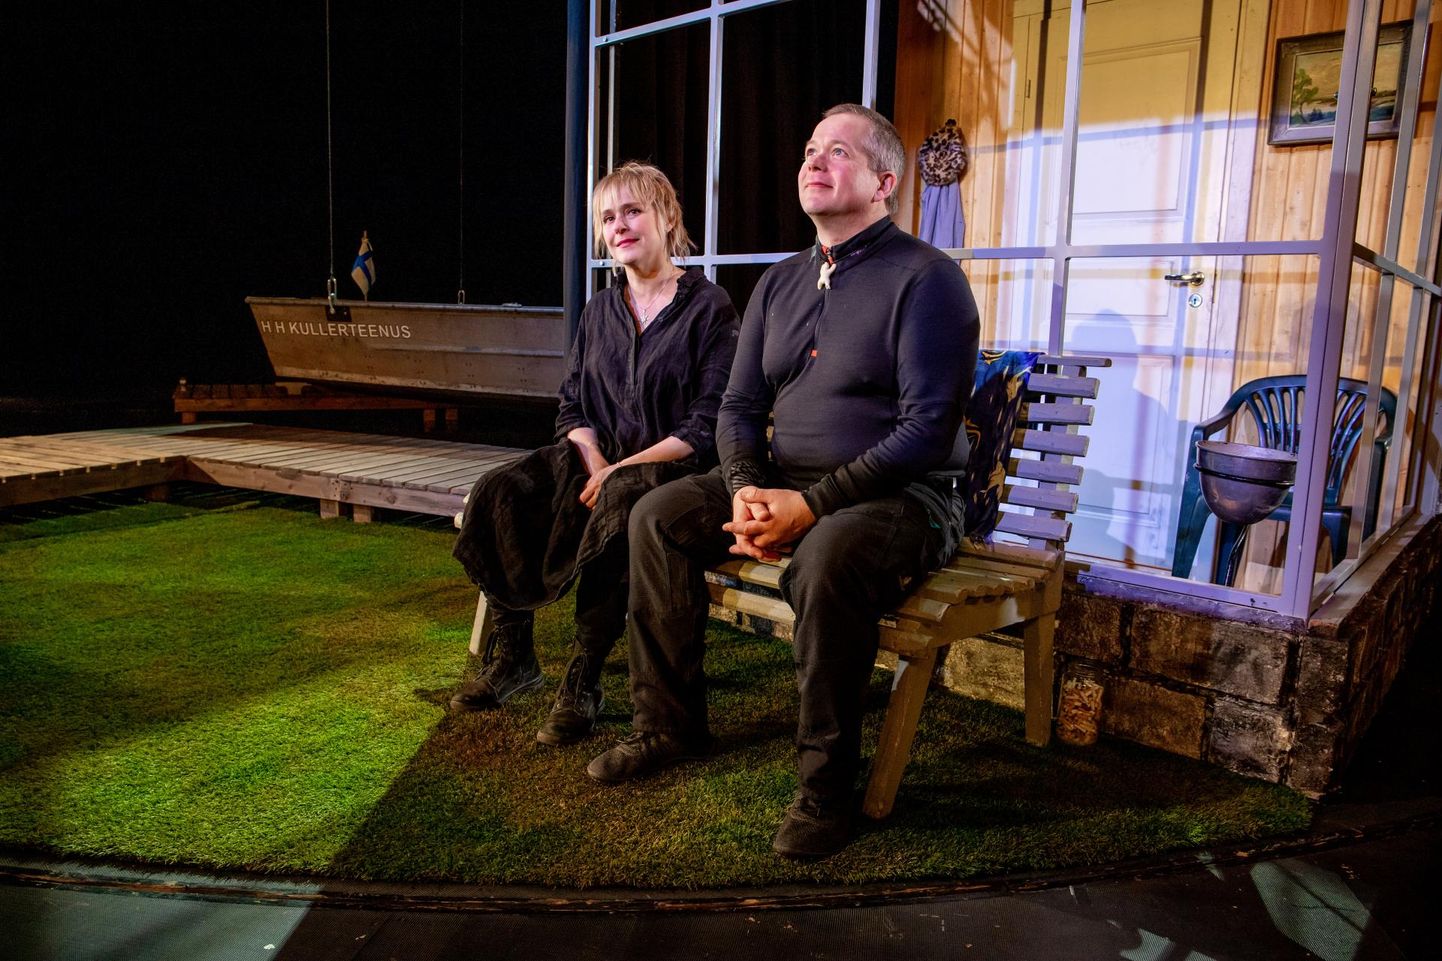 Soome näitekirjanikud Leea ja Klaus Klemola väisasid Endla teatrit ja käisid siin vaatamas oma Kokkola-lugude ­viimast lavas­tust “Arktilised mängud”.